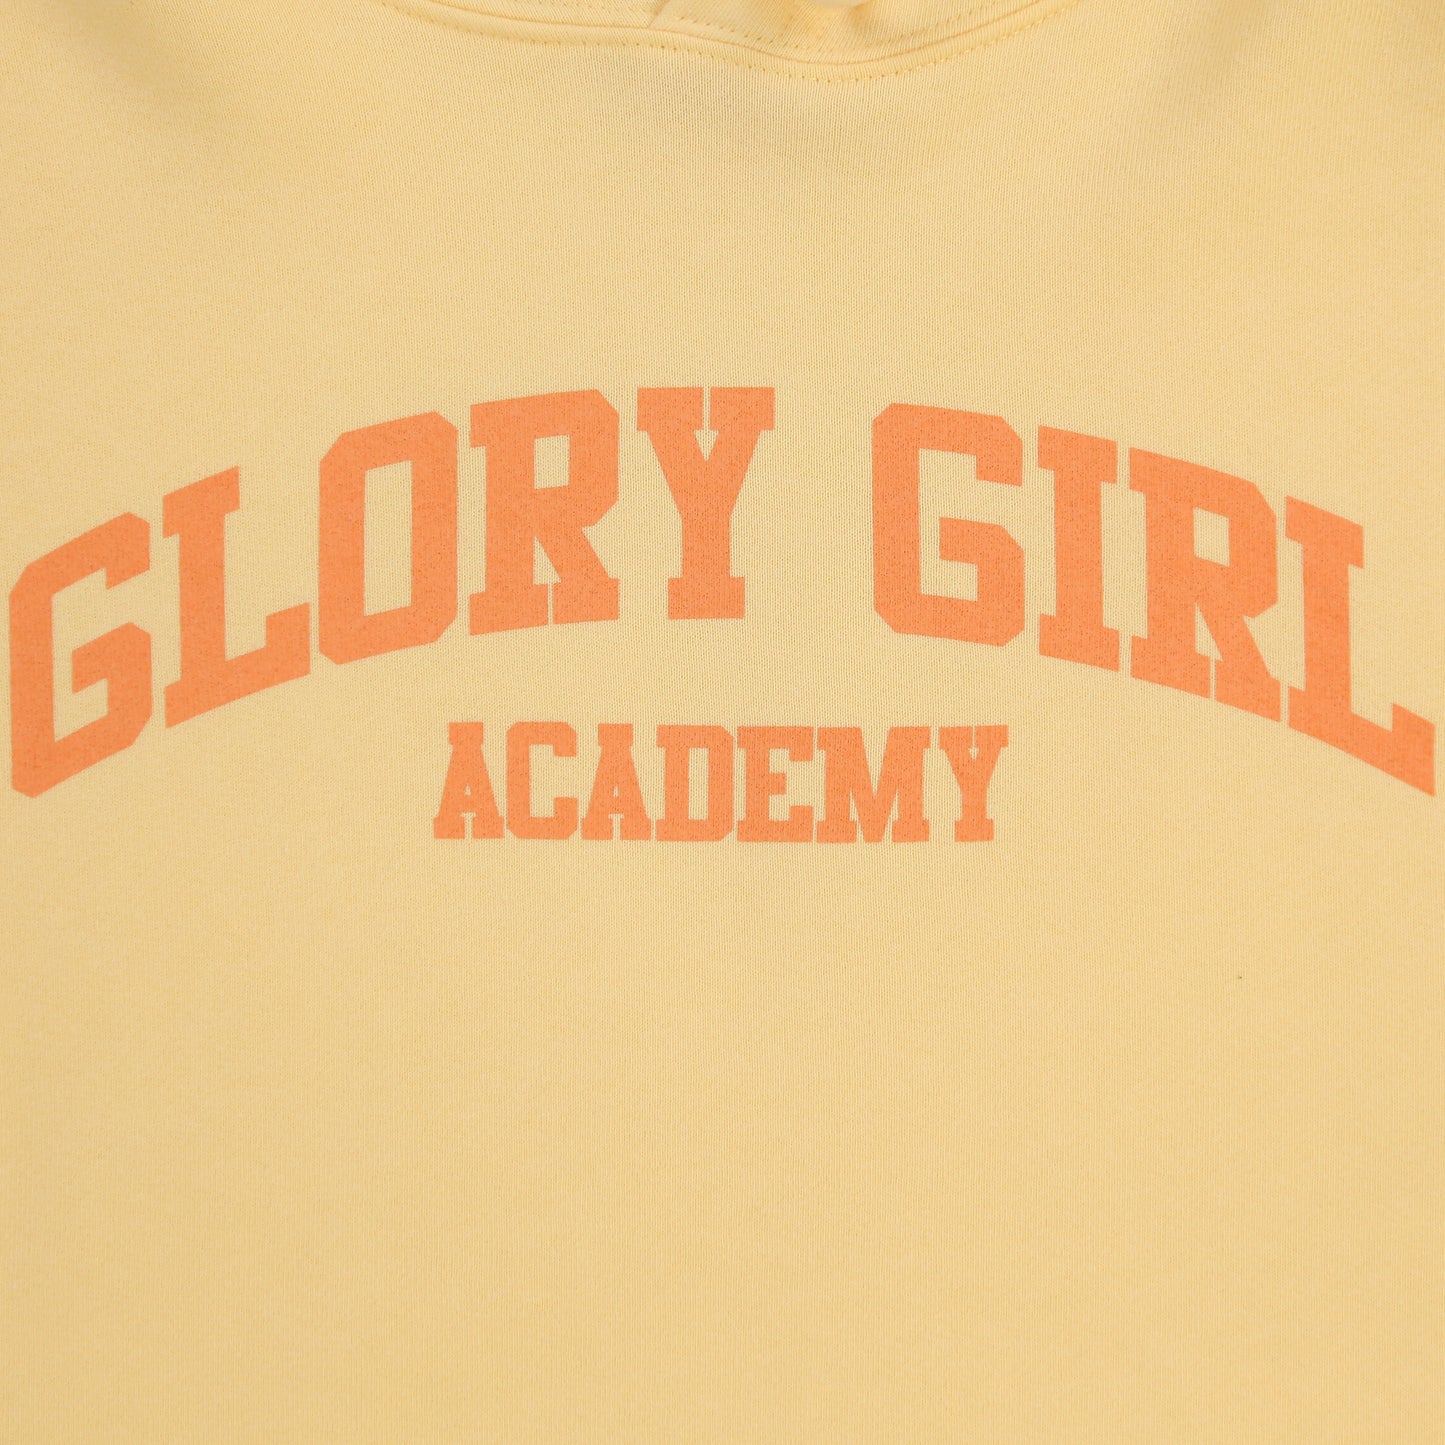 Glory Girl Academy Crop Hoodie (Creamsicle)